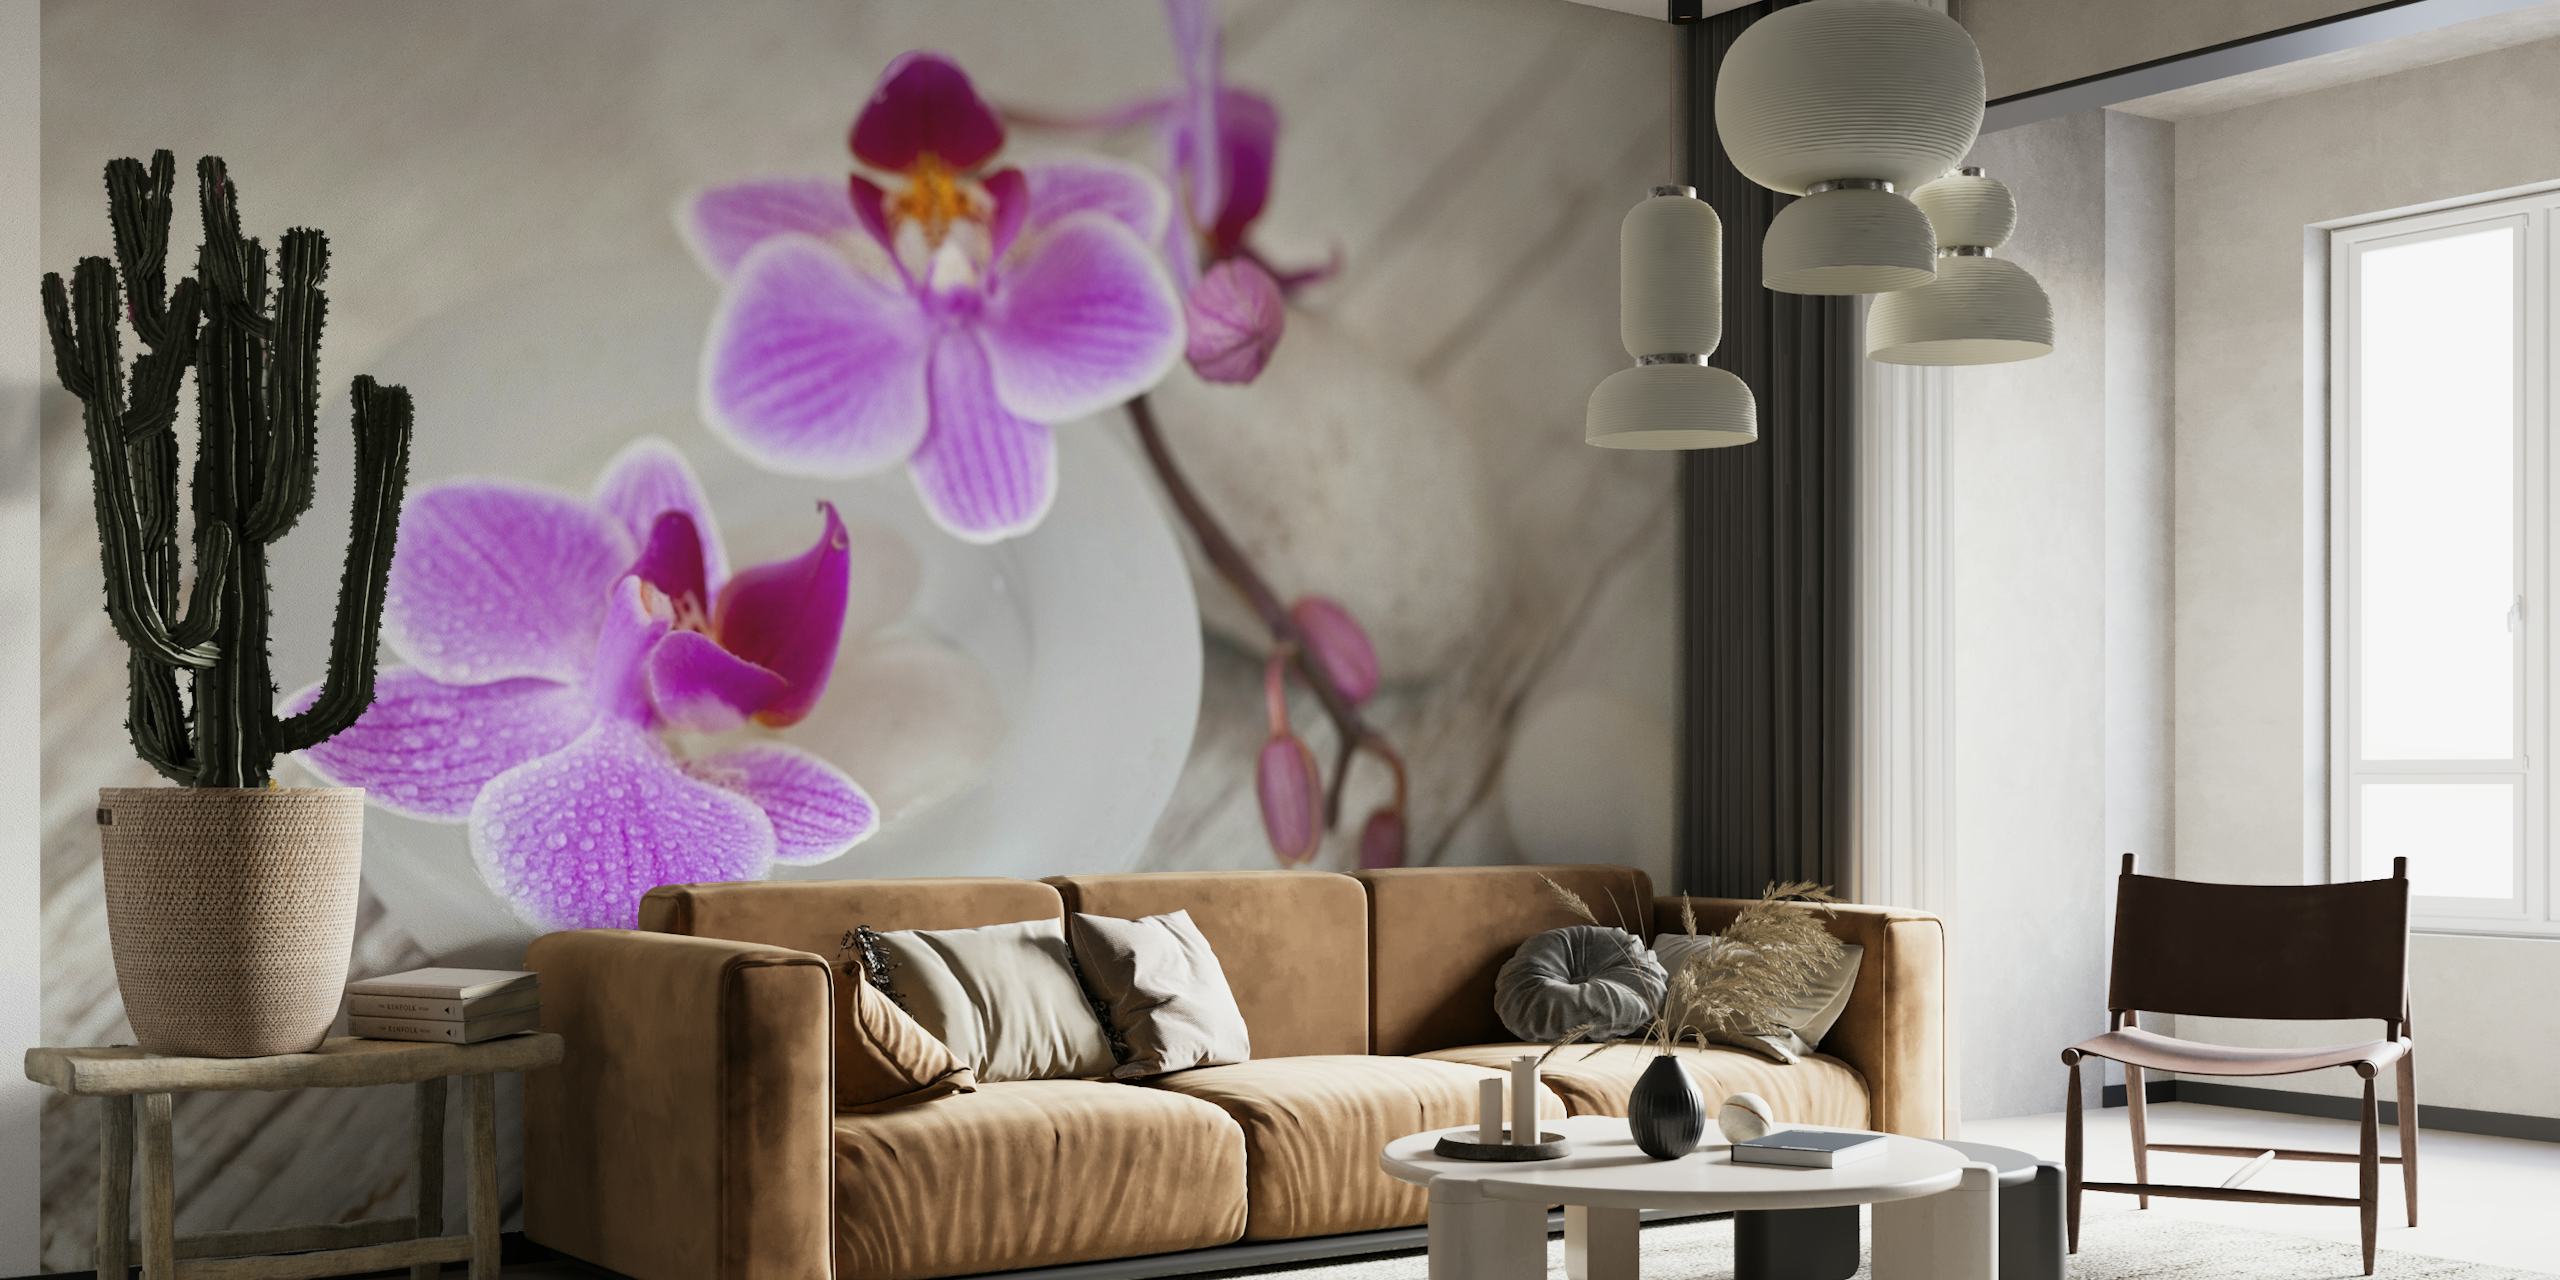 Roze orchideebloem stilleven muurschildering op een houten achtergrond met kiezelstenen